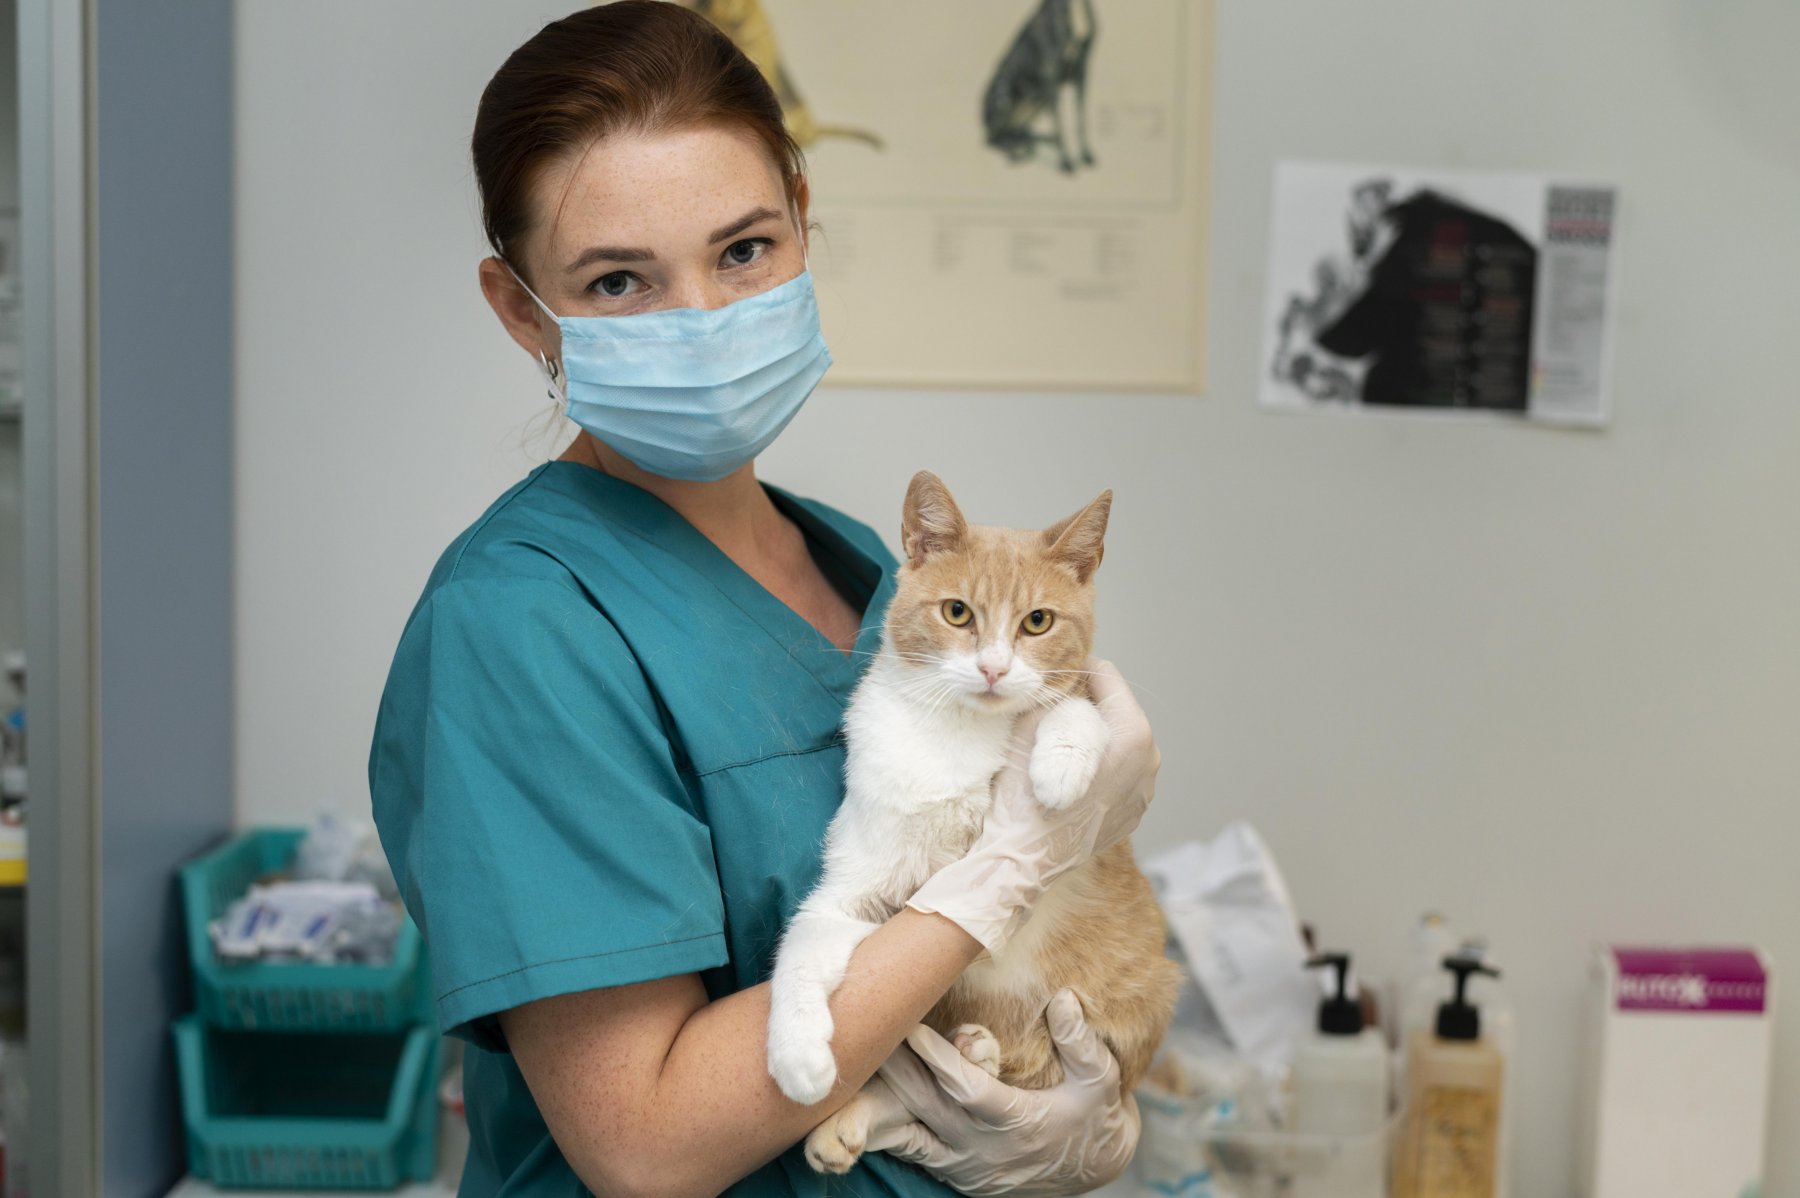 Онлайн-запись к ветеринару в Москве стала в два раза популярнее за четыре года